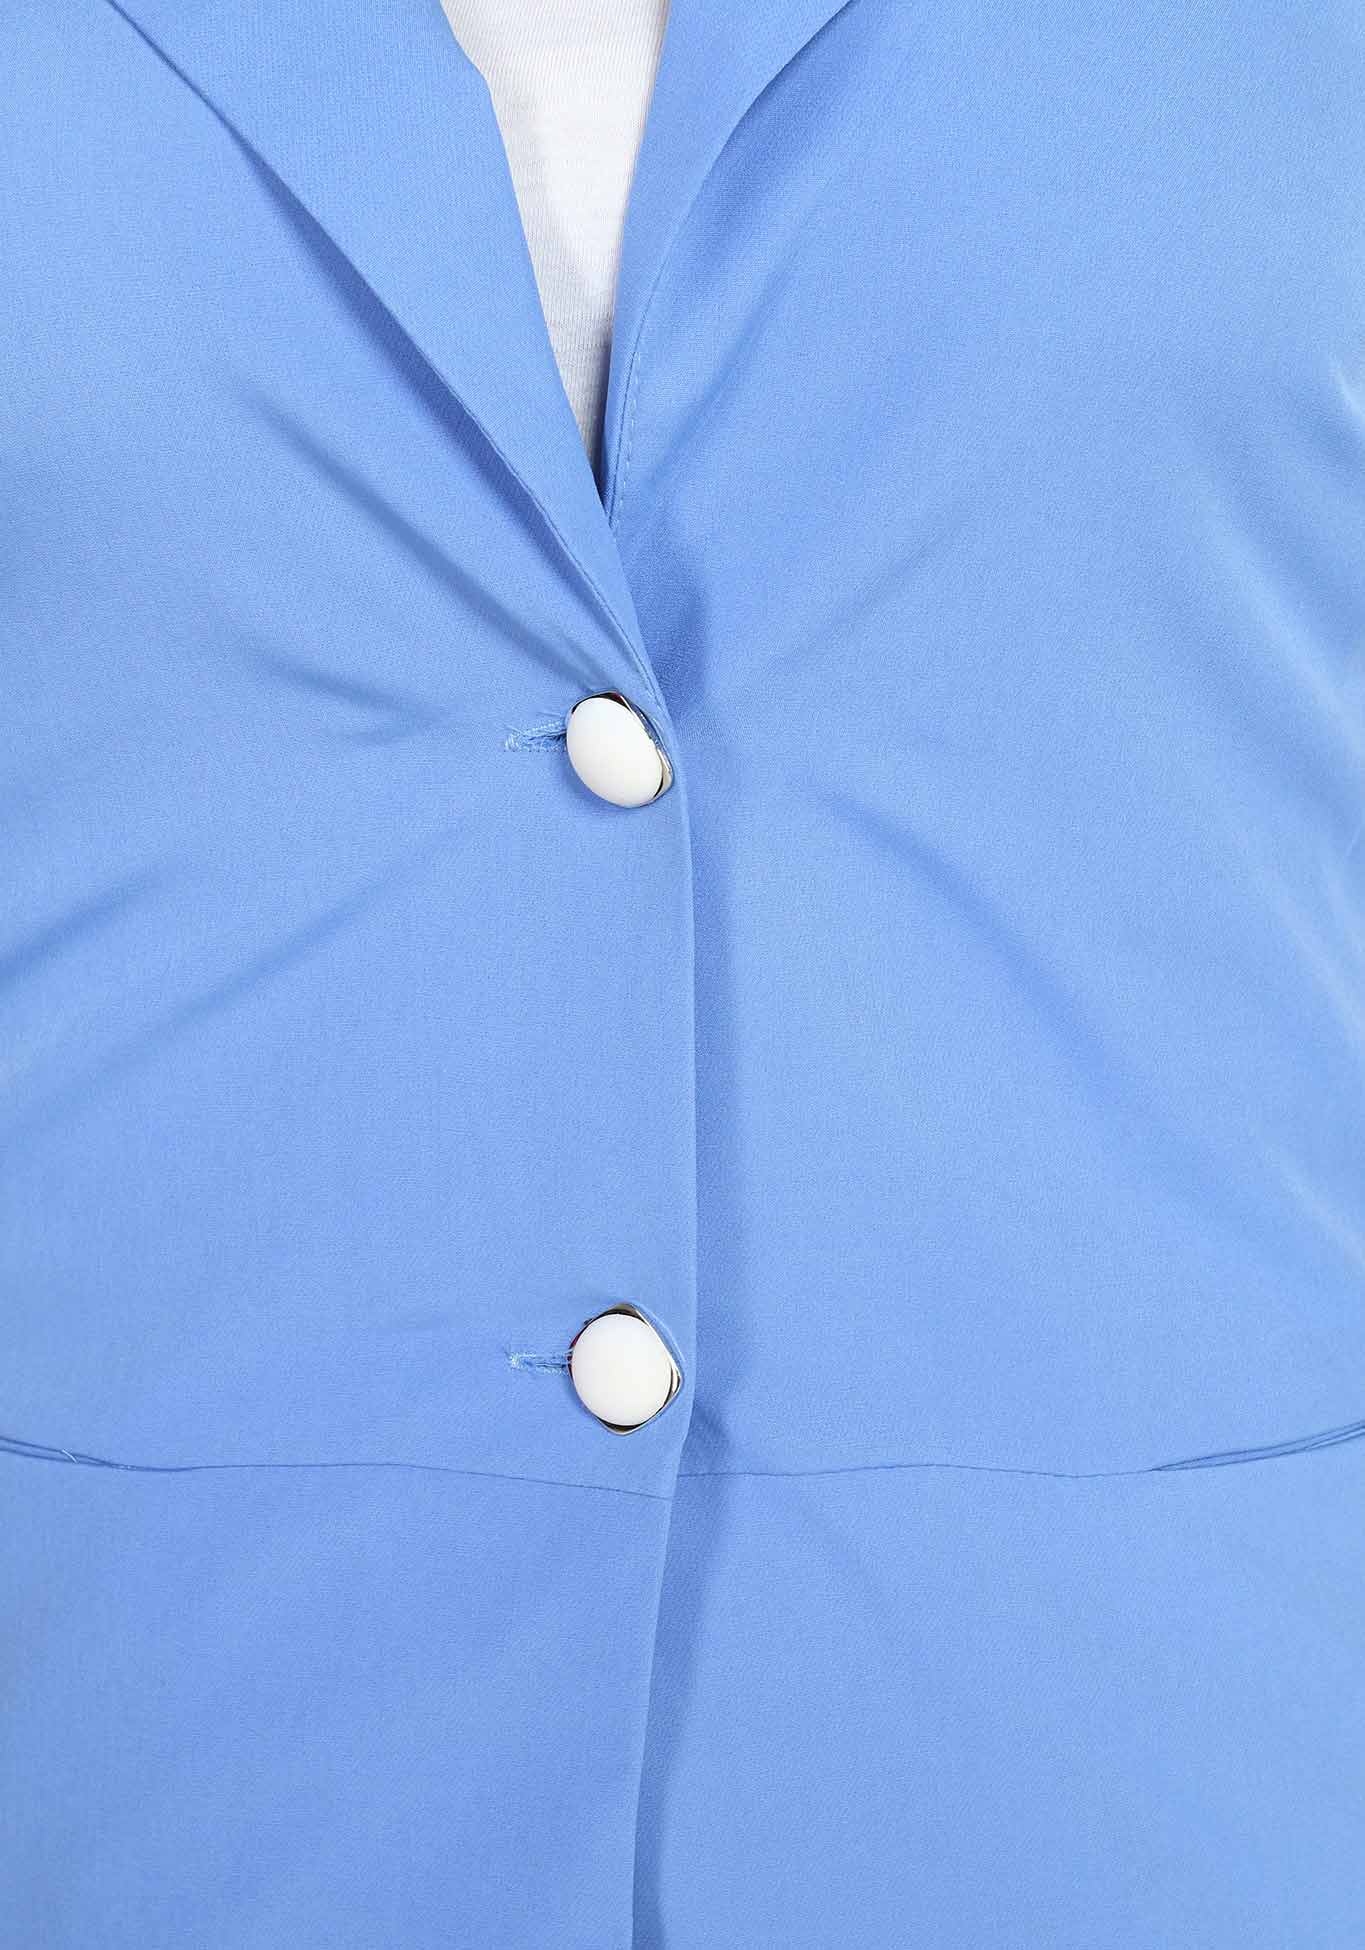 Жилет с боковыми вставками и карманами BlagoF, размер 48, цвет голубой - фото 5